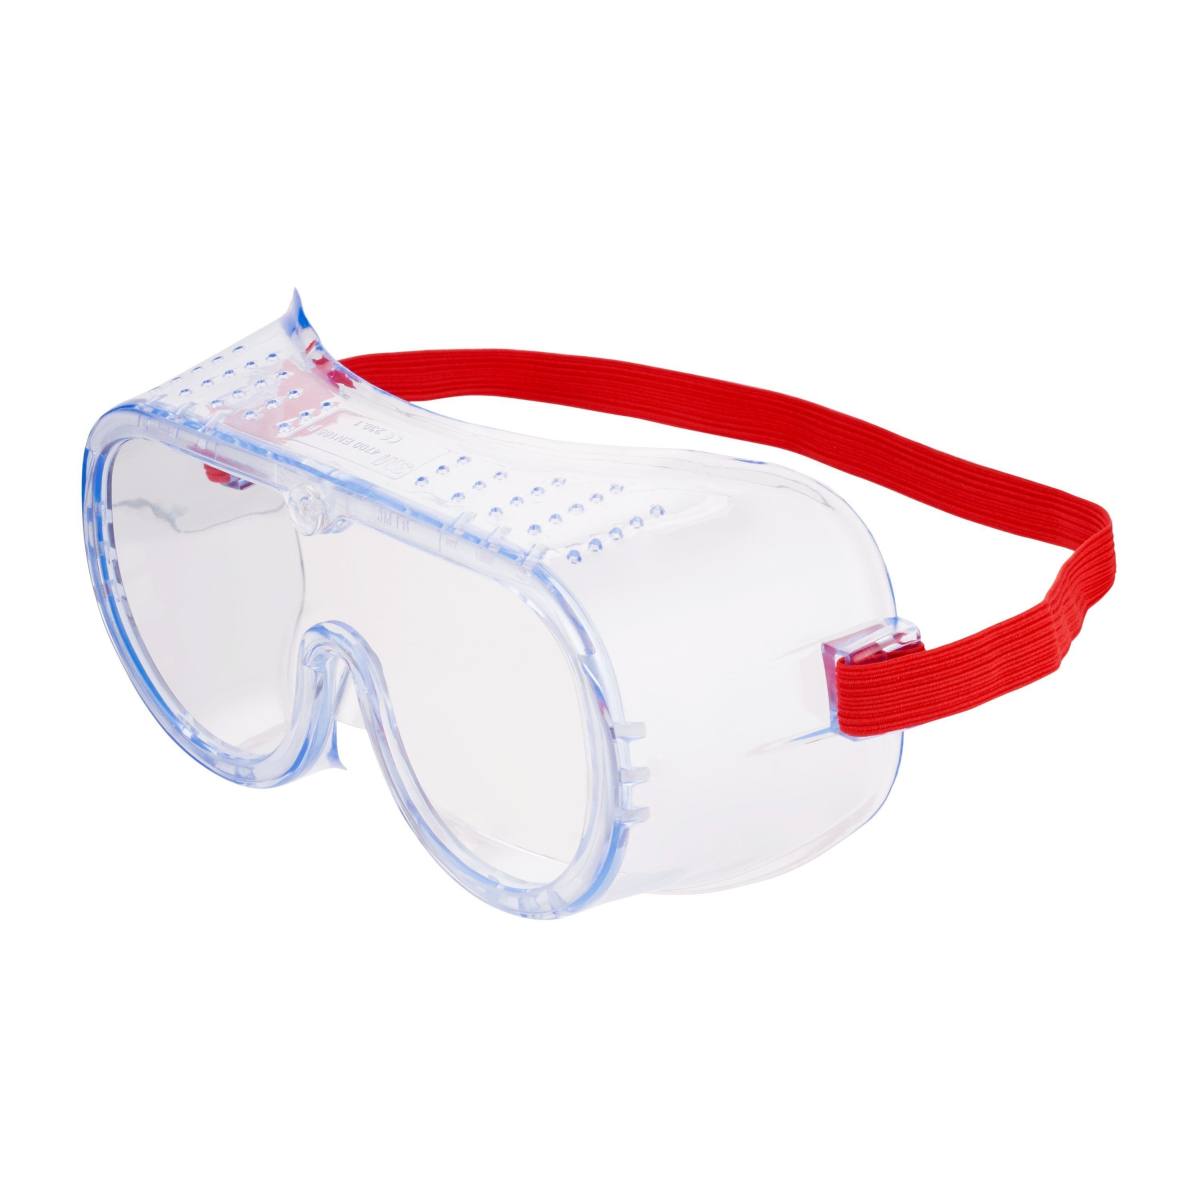 3M Gafas de protección de visión total 4700, transparentes